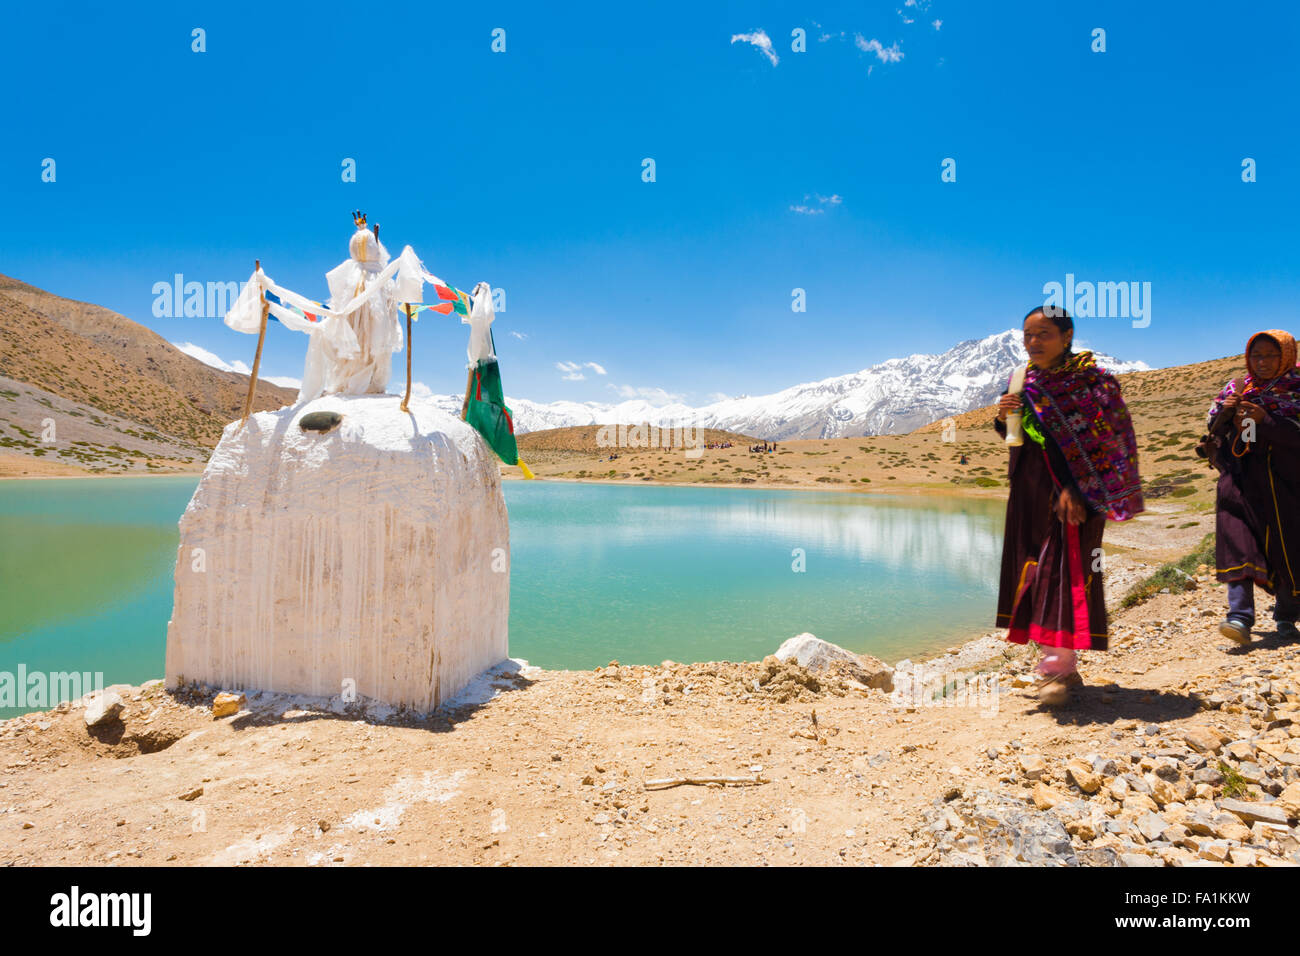 Pellegrini buddista a piedi in pellegrinaggio passato uno stupa intorno a un incontaminato lago alpino in Himalaya nella Spiti Valley Foto Stock